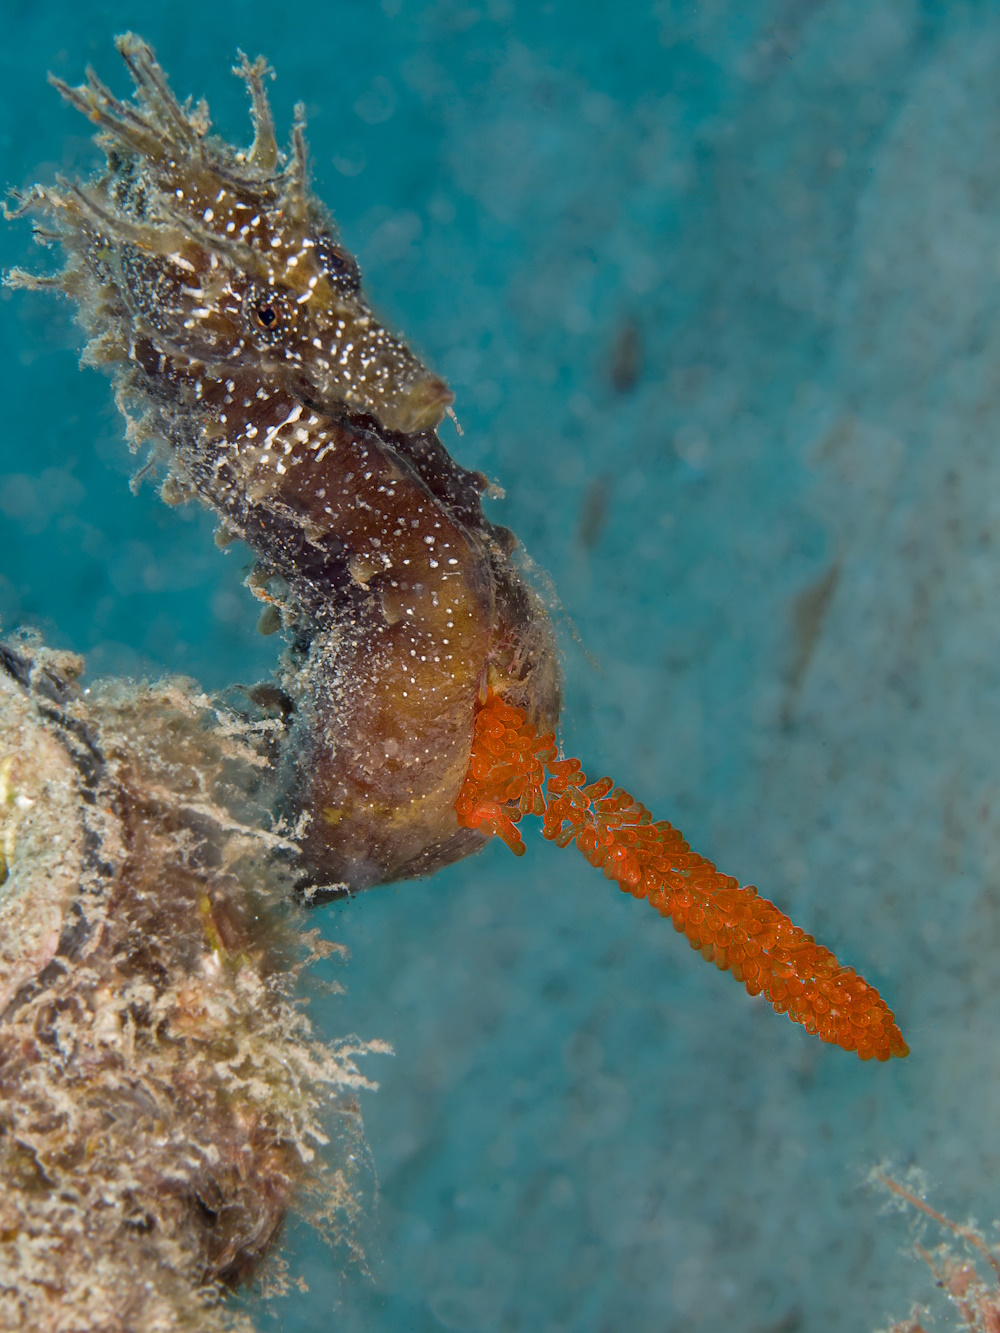 A seahorse exposing its eggs.